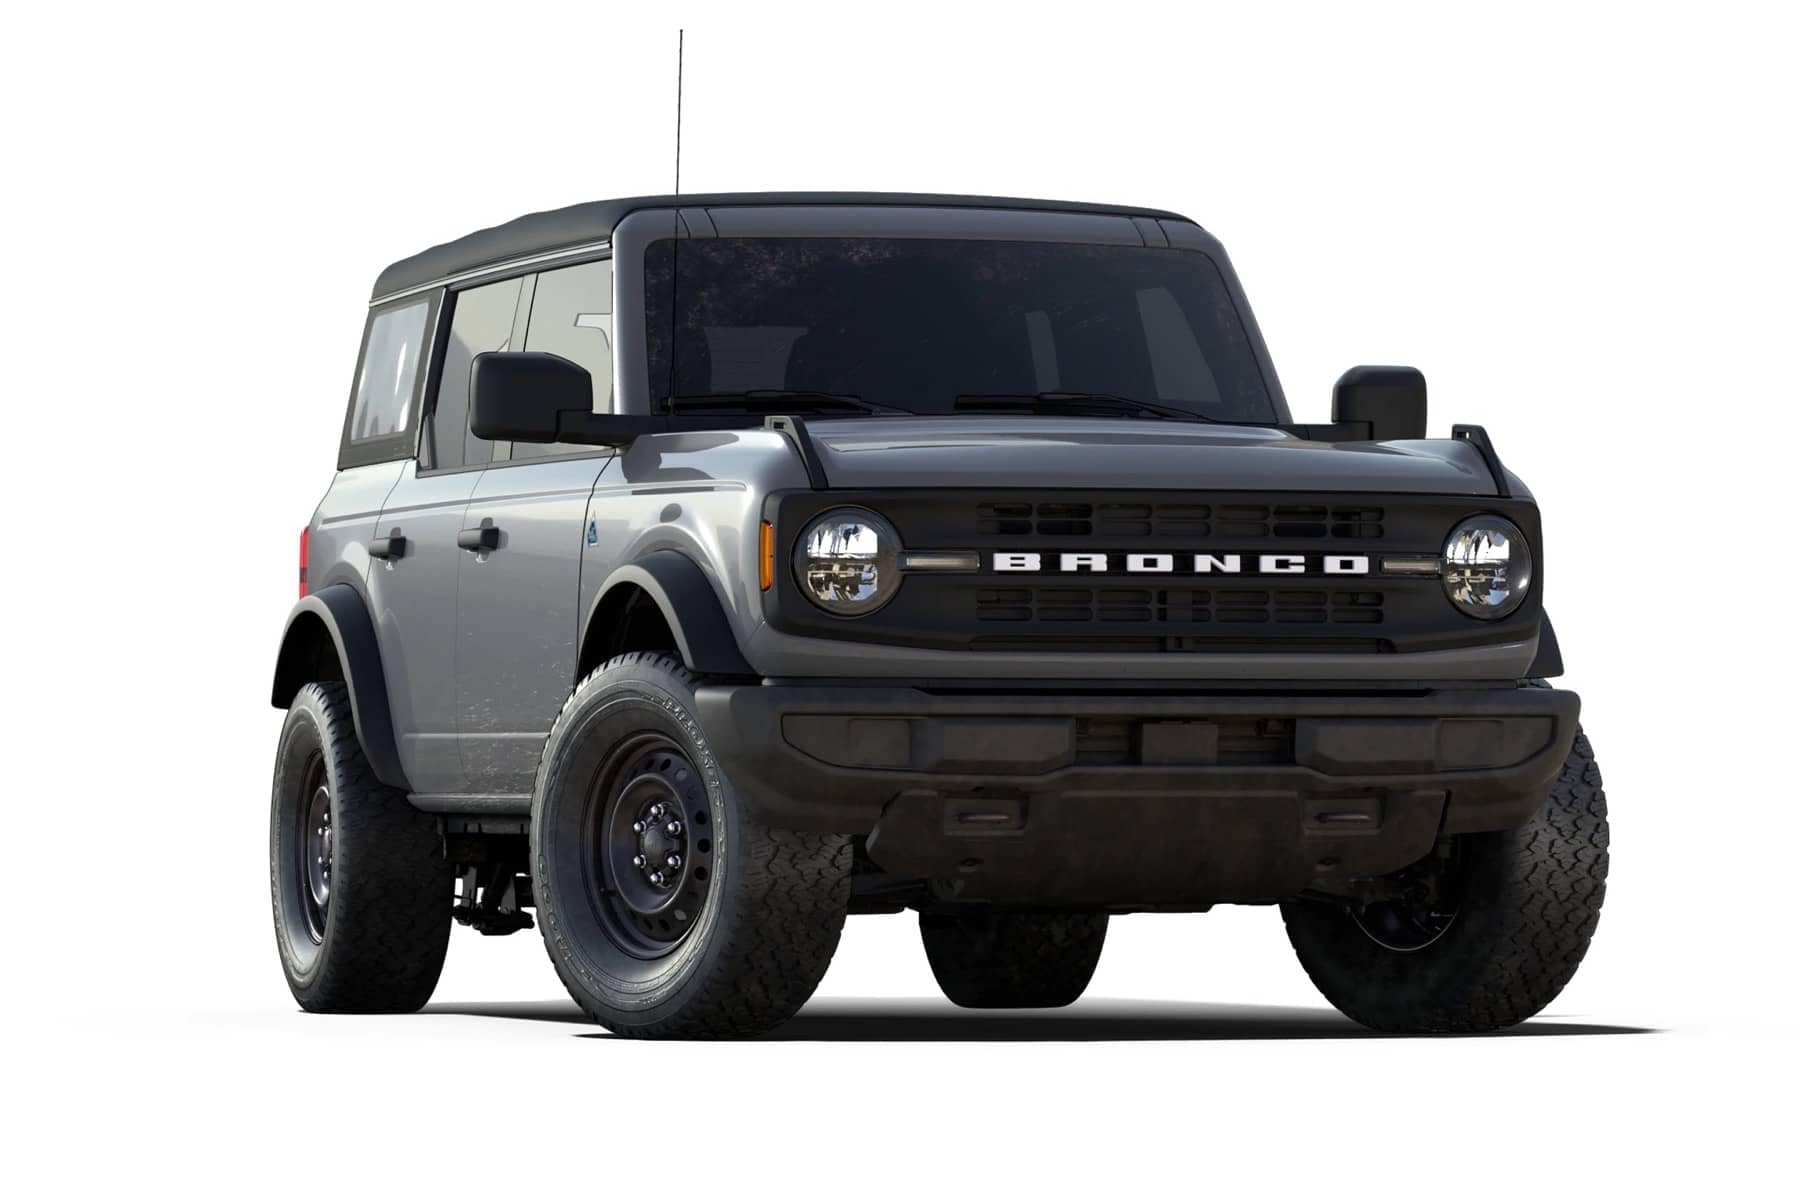 2021 Ford Bronco Black Diamond model